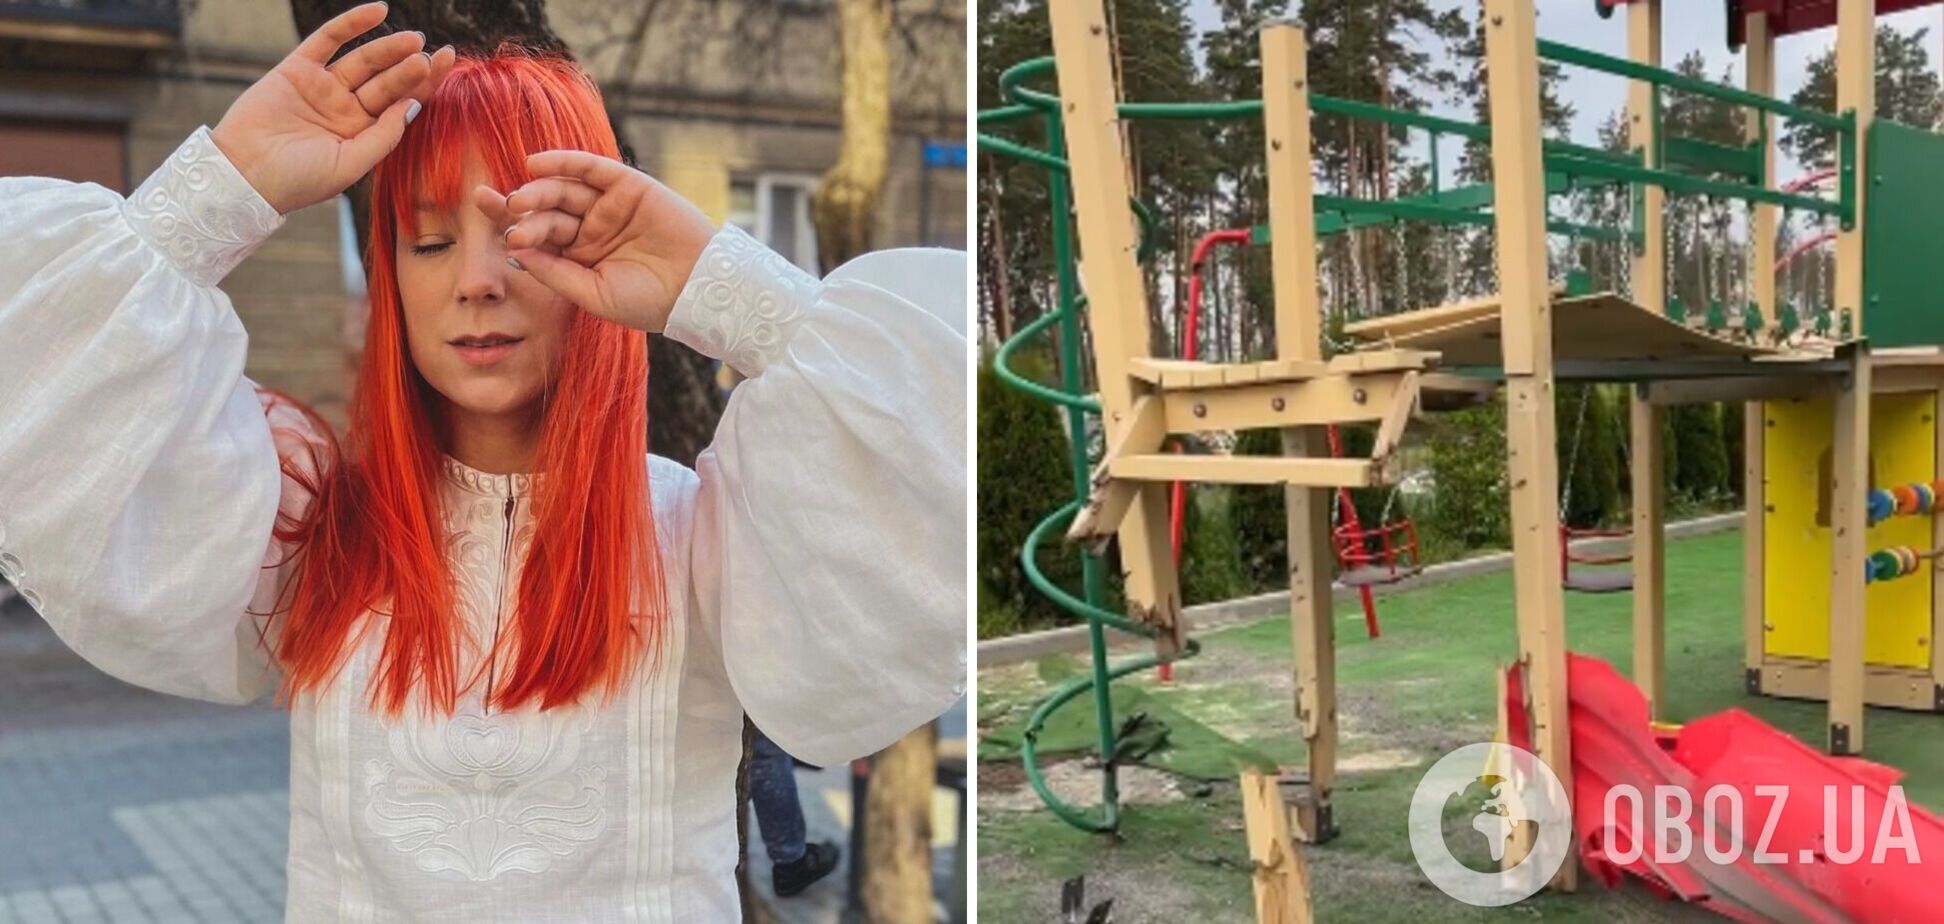 Тарабарова показала, как оккупанты 'денацифицировали' детскую площадку возле ее дома под Киевом